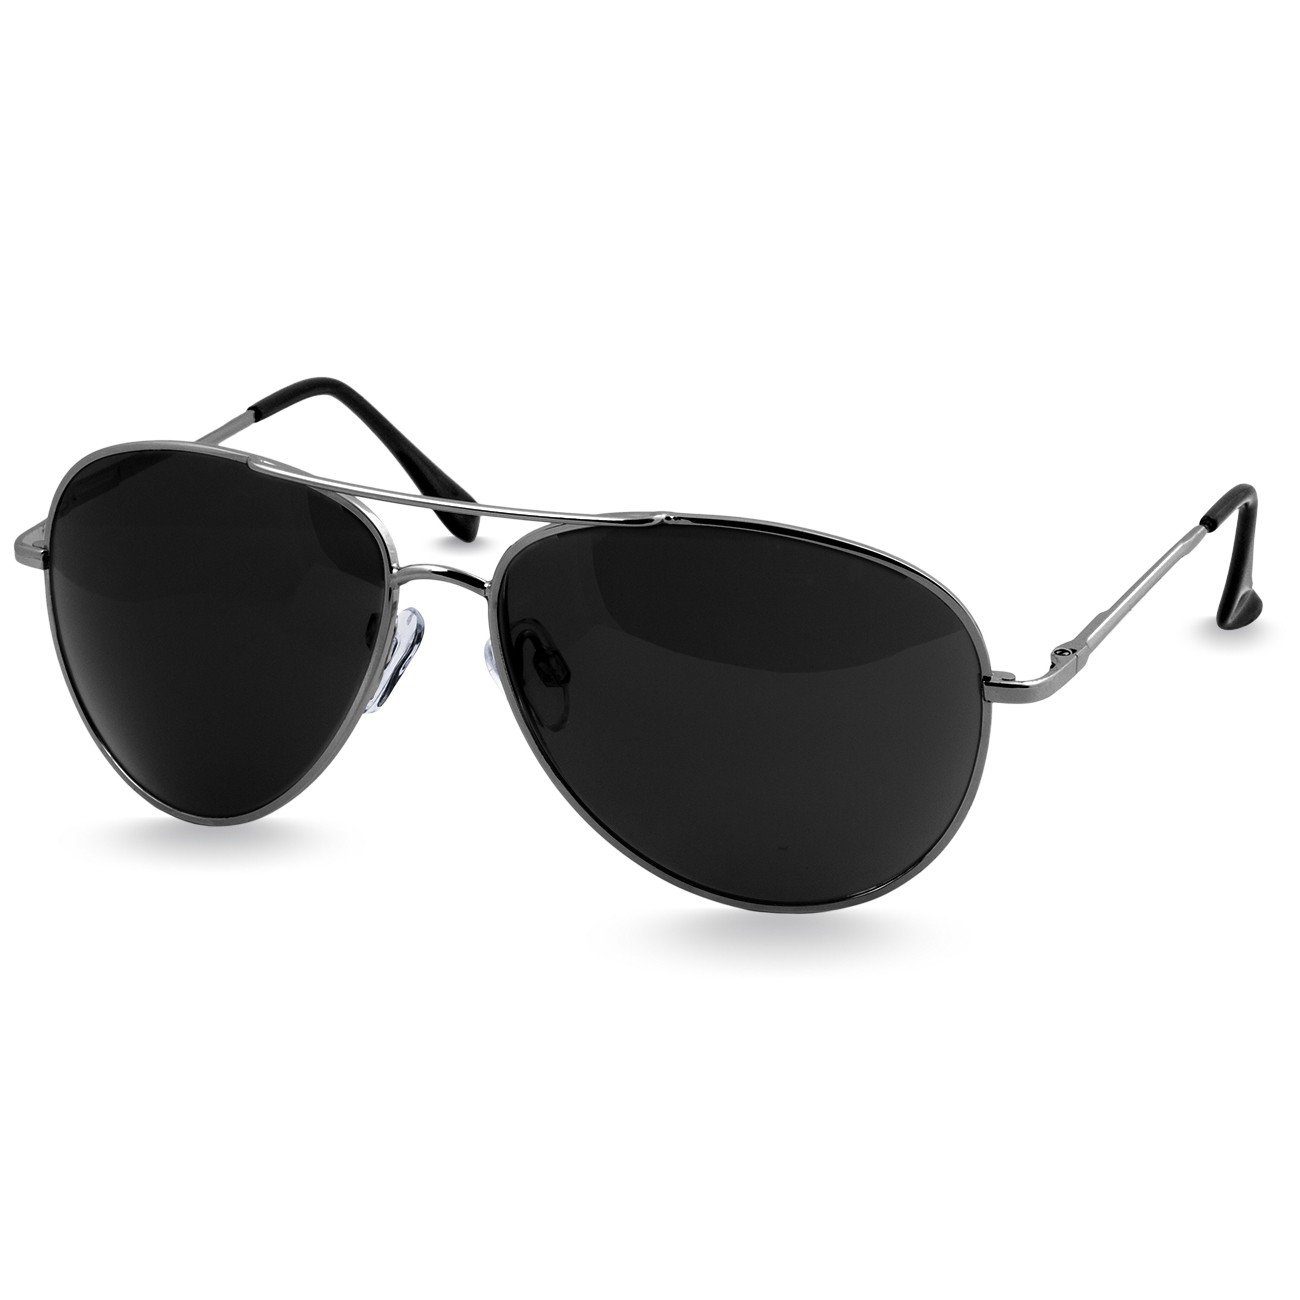 Caspar Sonnenbrille SG013 klassische Unisex Retro Pilotenbrille silber / schwarz | Sonnenbrillen